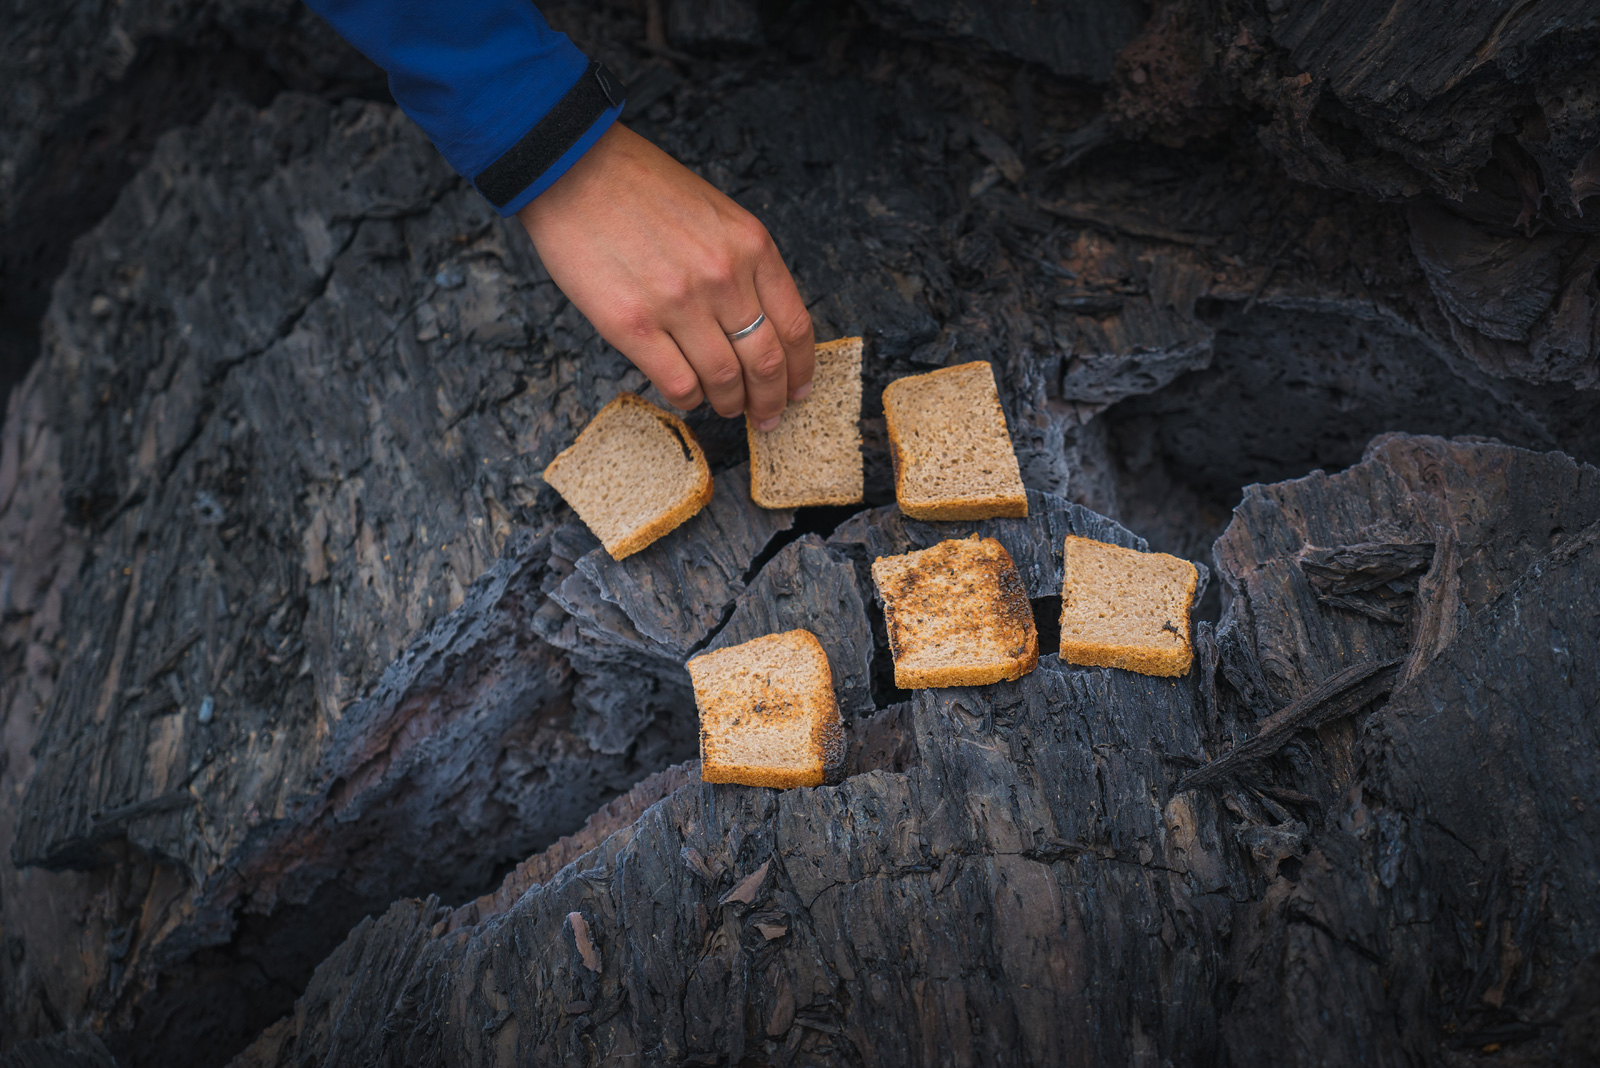 Toasting bread on hot lava rocks